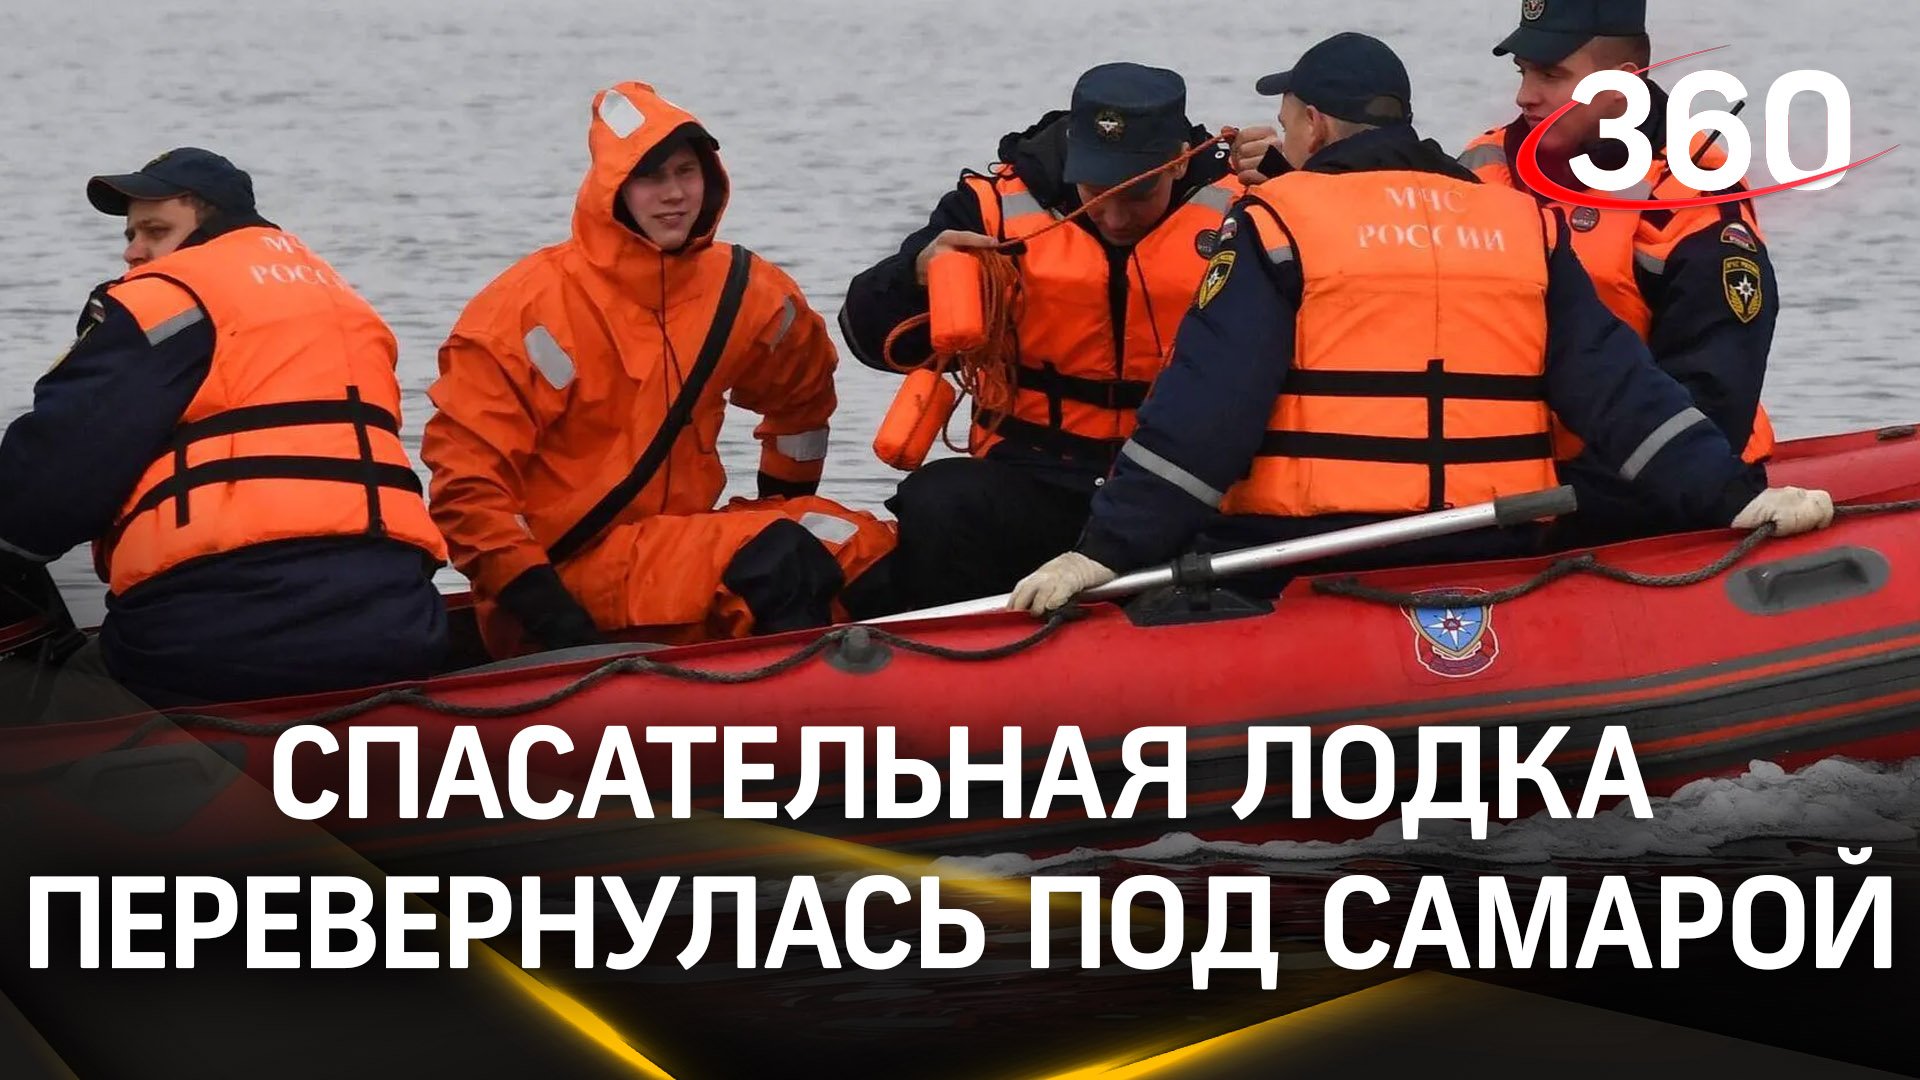 Видео: перевернулась лодка с людьми, которых спасали от наводнения под Самарой